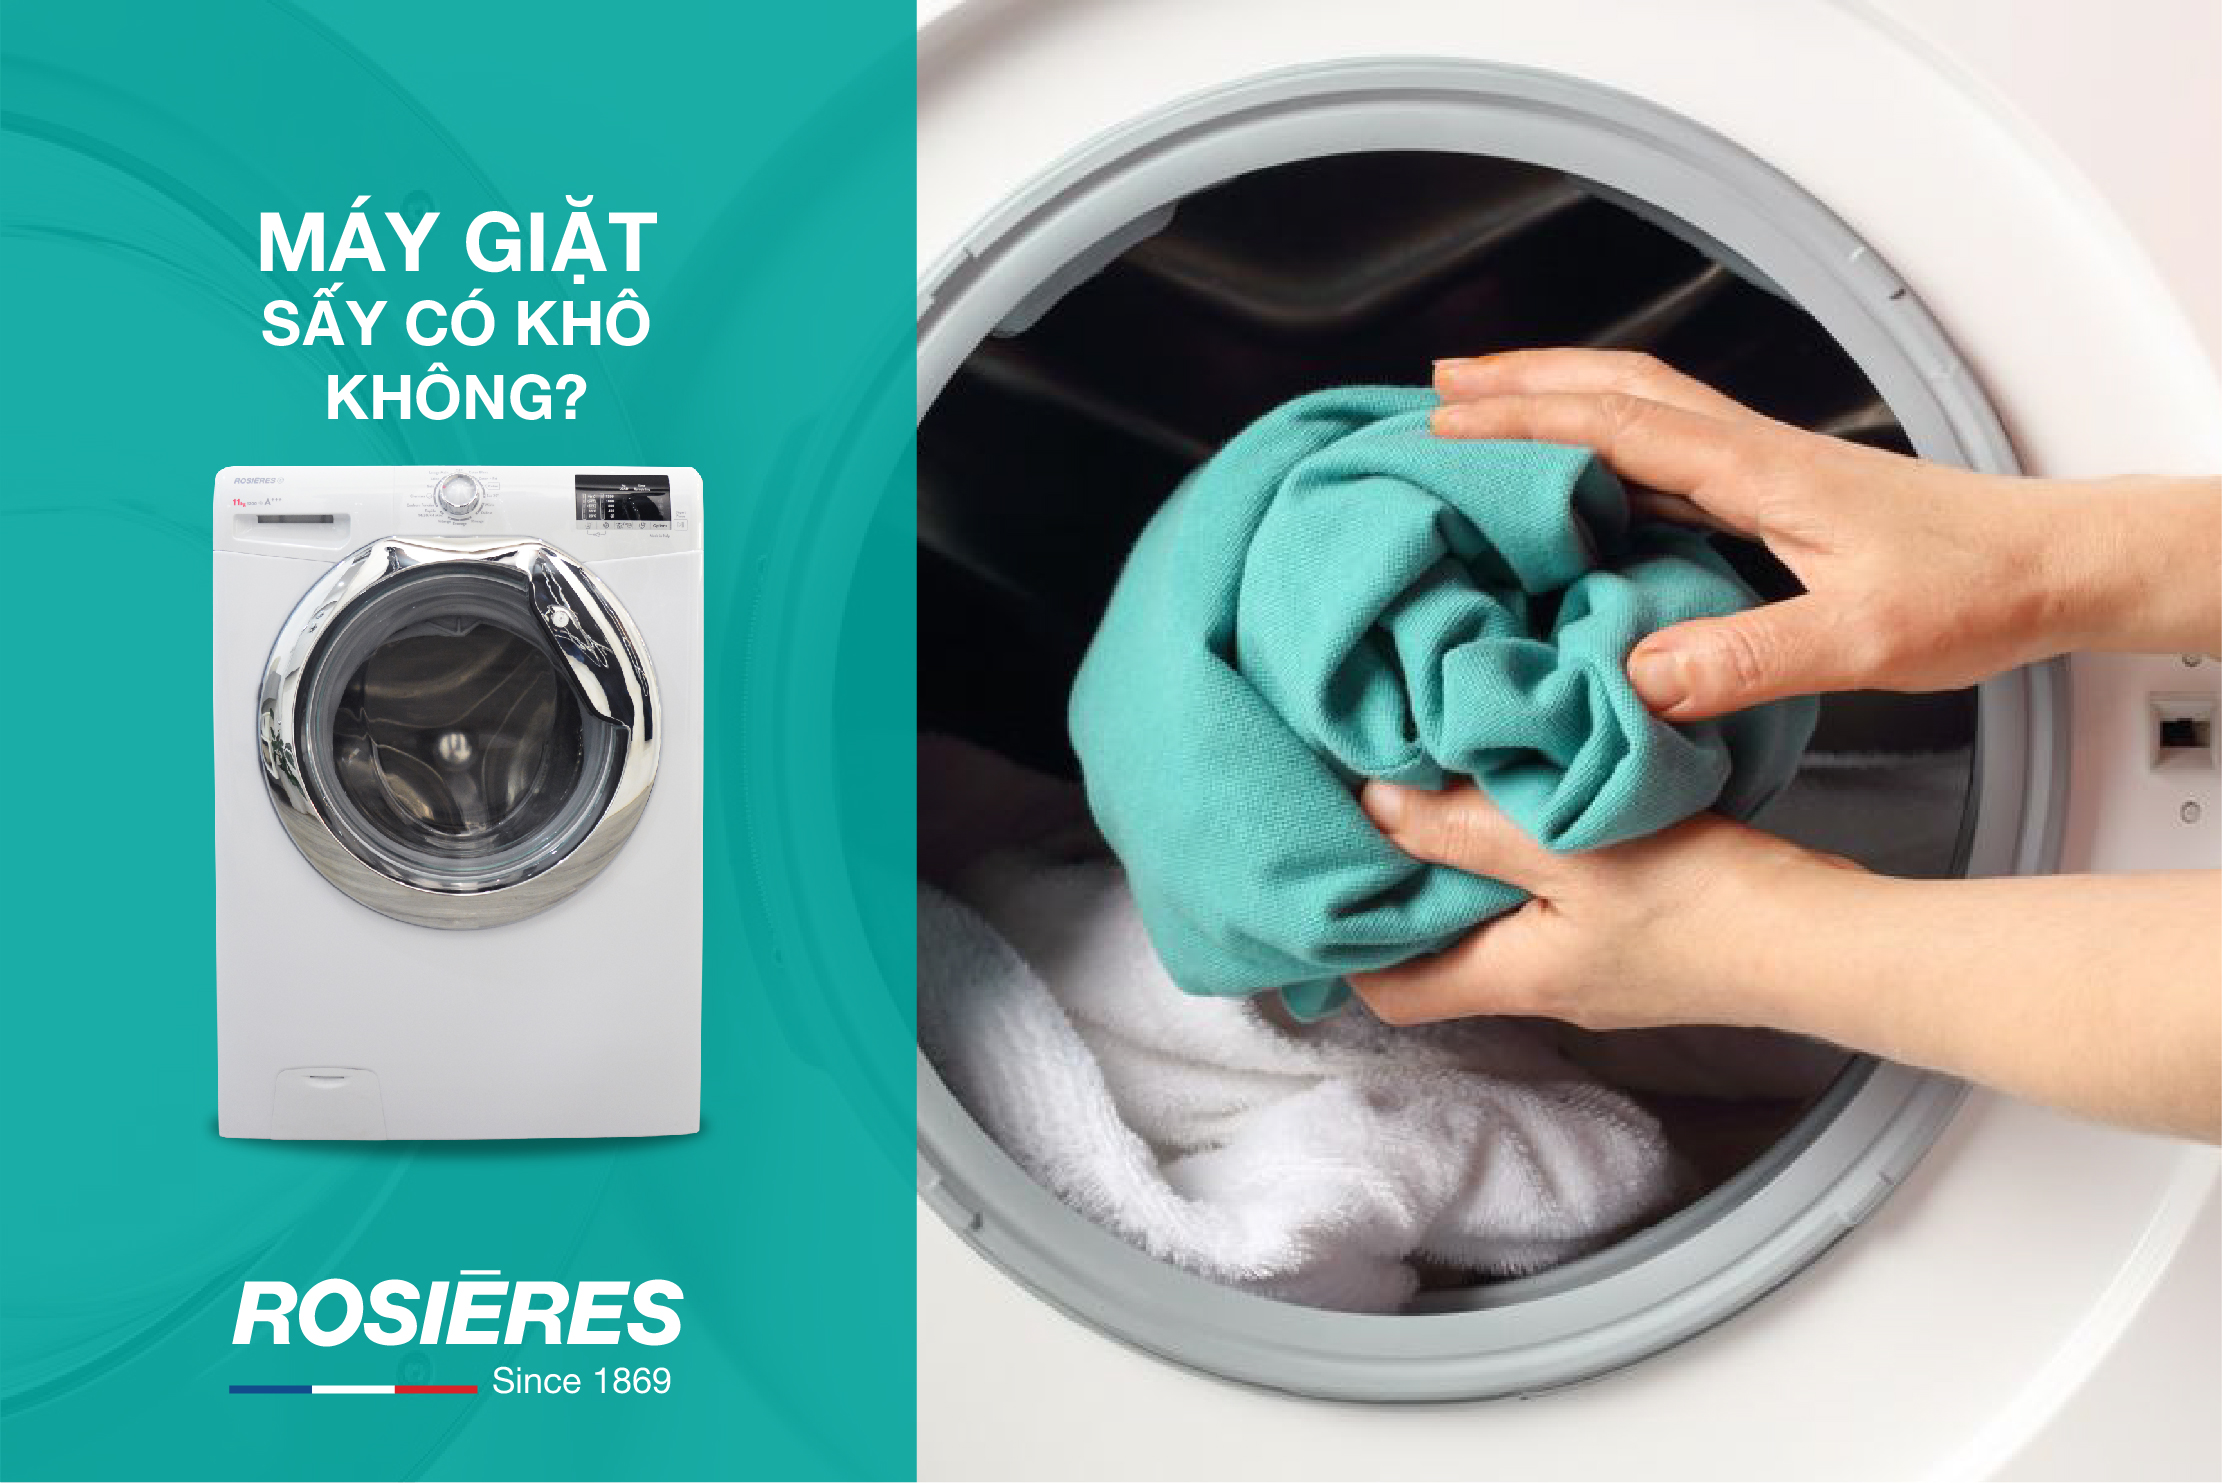 Cách sử dụng máy giặt sấy Electrolux | Có minh họa [2023]